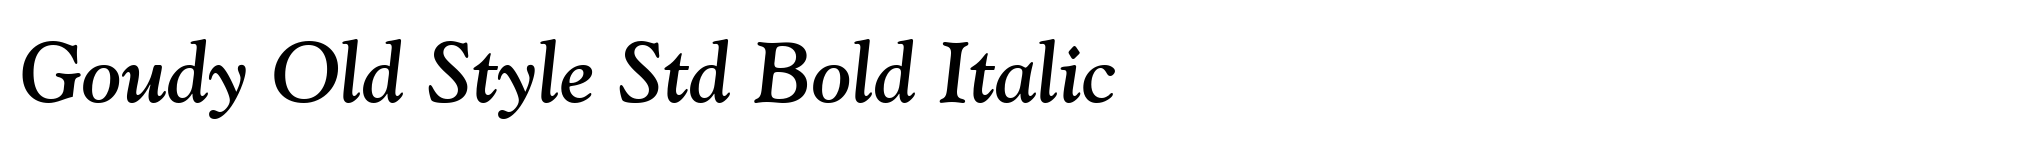 Goudy Old Style Std Bold Italic image